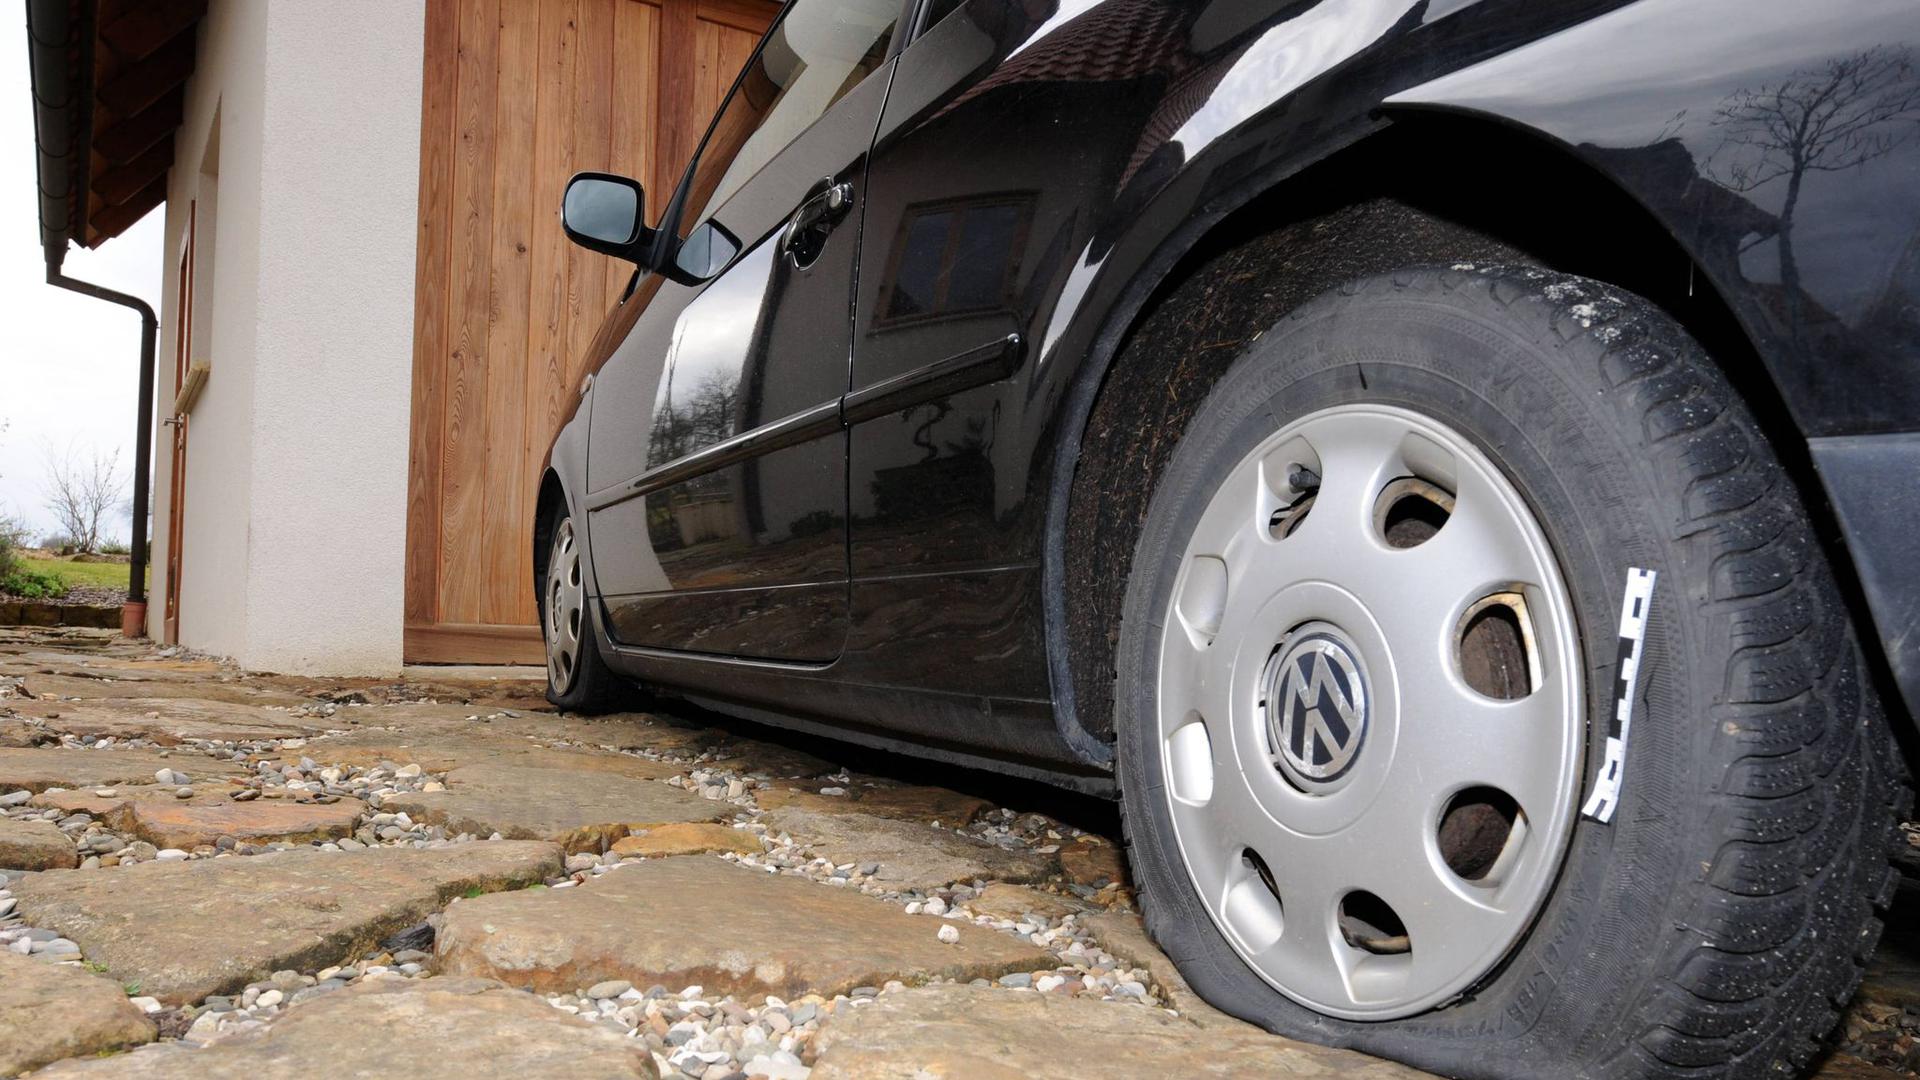 Platter Reifen: Bei nahezu allen Autos hat der Mann alle vier Reifen beschädigt.